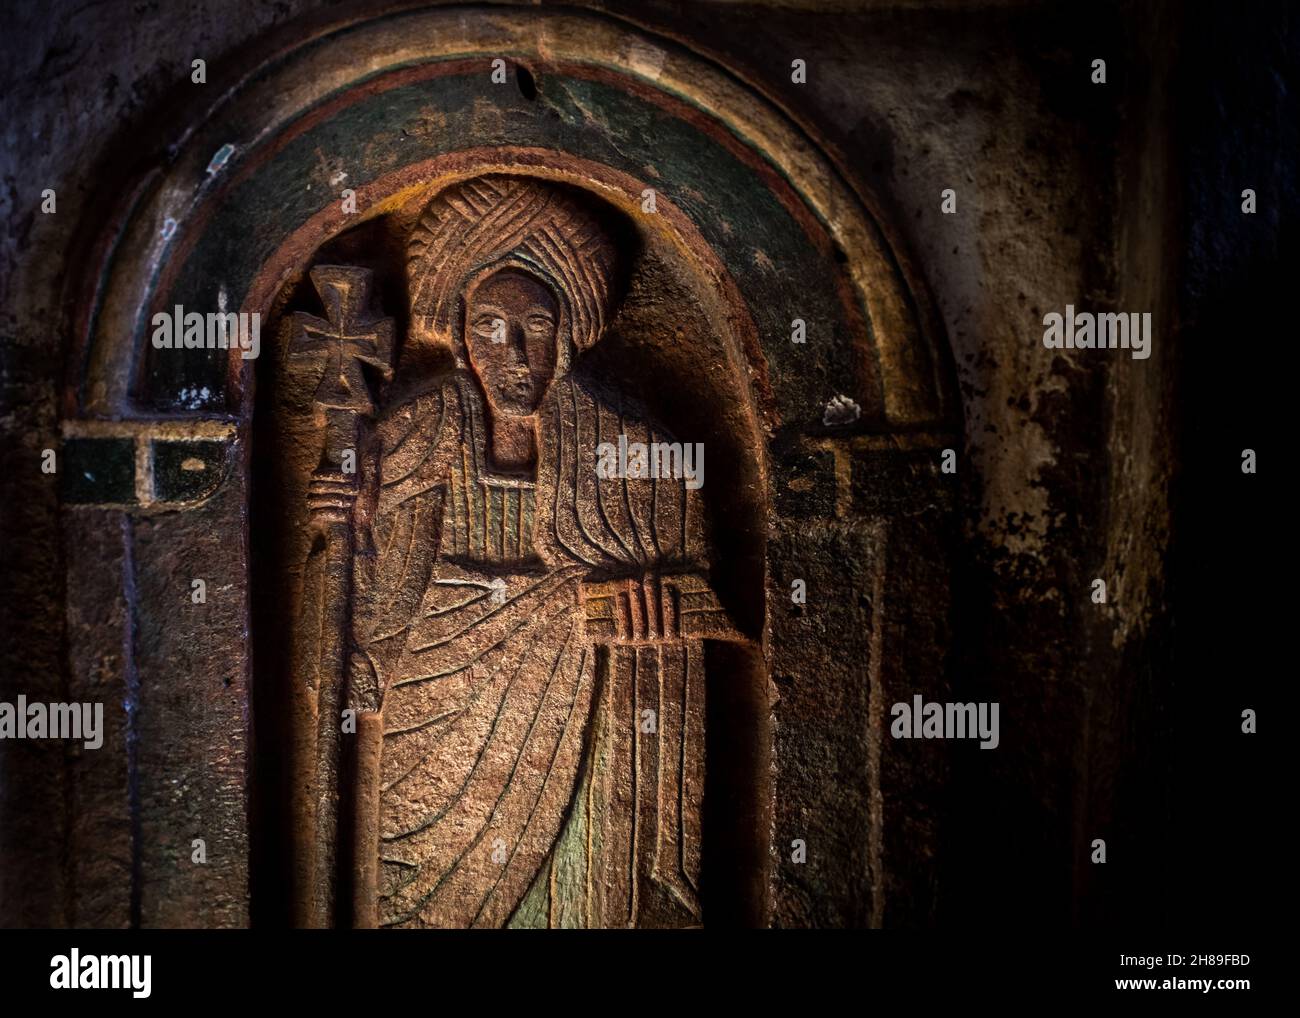 Particolare di un bassorilievo di un santo, preso senza flash, orientamento paesaggistico, Lalibela, Etiopia Foto Stock